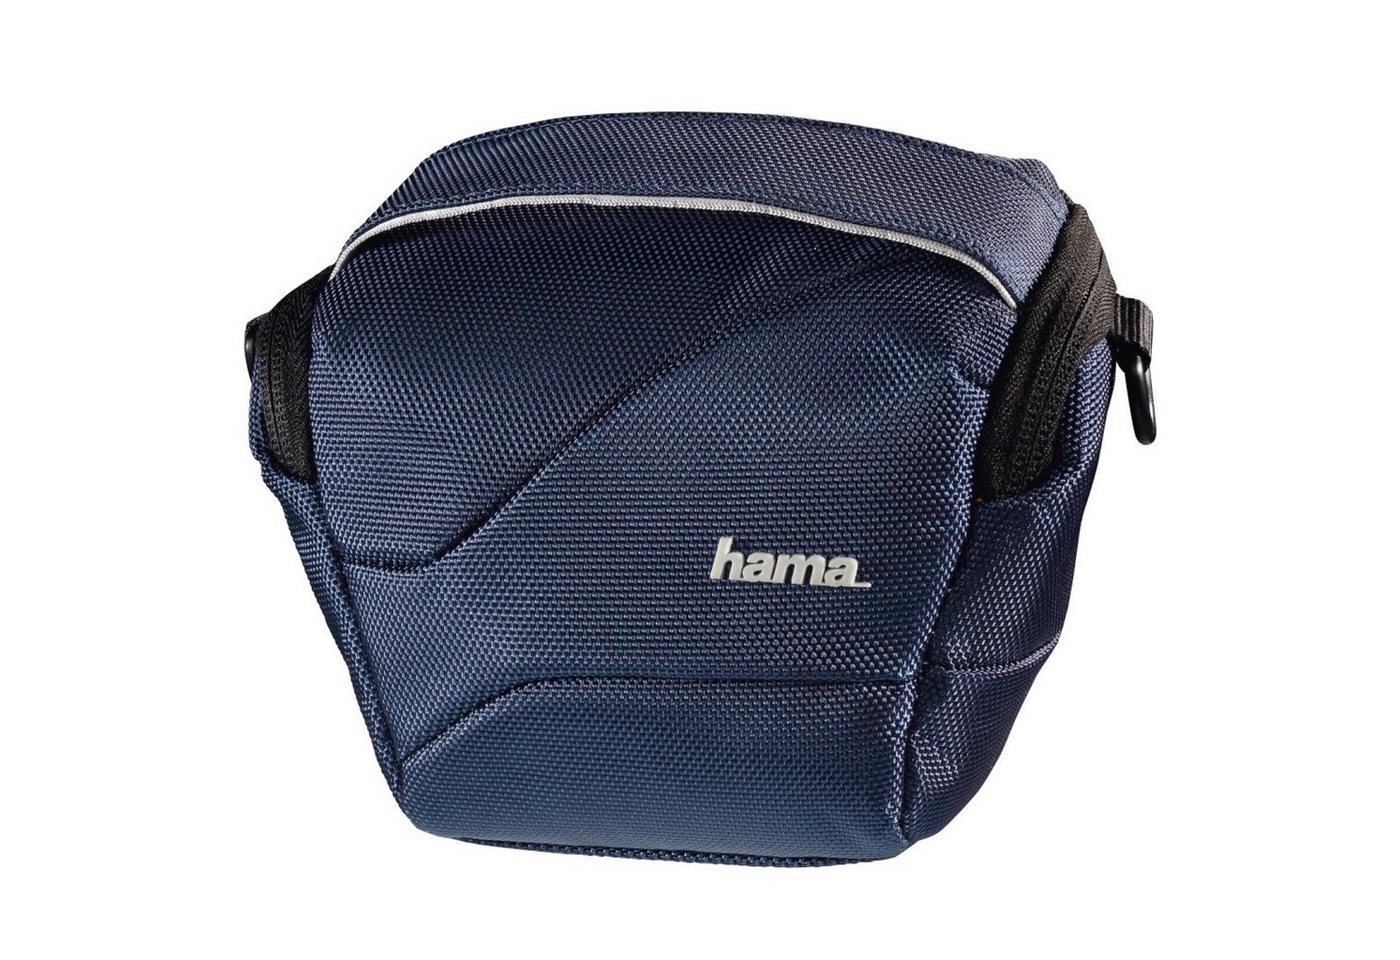 Hama Kameratasche Kamera-Tasche Seattle Colt 80 Blau Foto-Tasche Etui, für Systemkamera Bridge-Kamera, Gürtel-Schlaufe, weiches Innenfutter von Hama